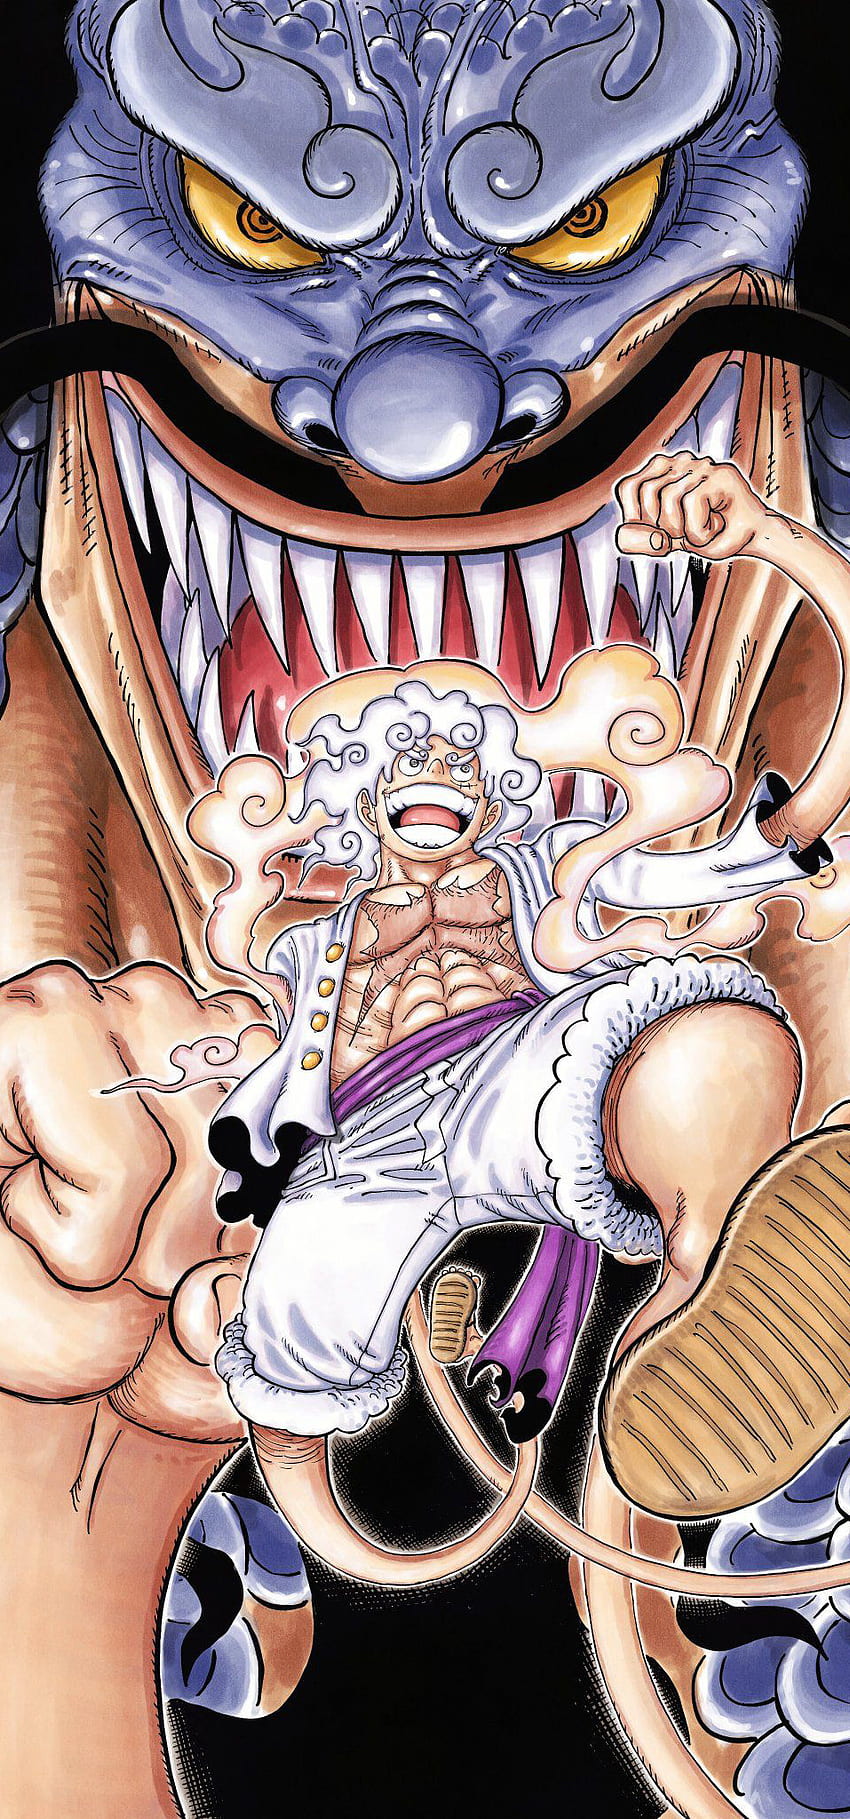 Update More Than 120 One Piece Kaido Wallpaper Super Hot Noithatsi Vn